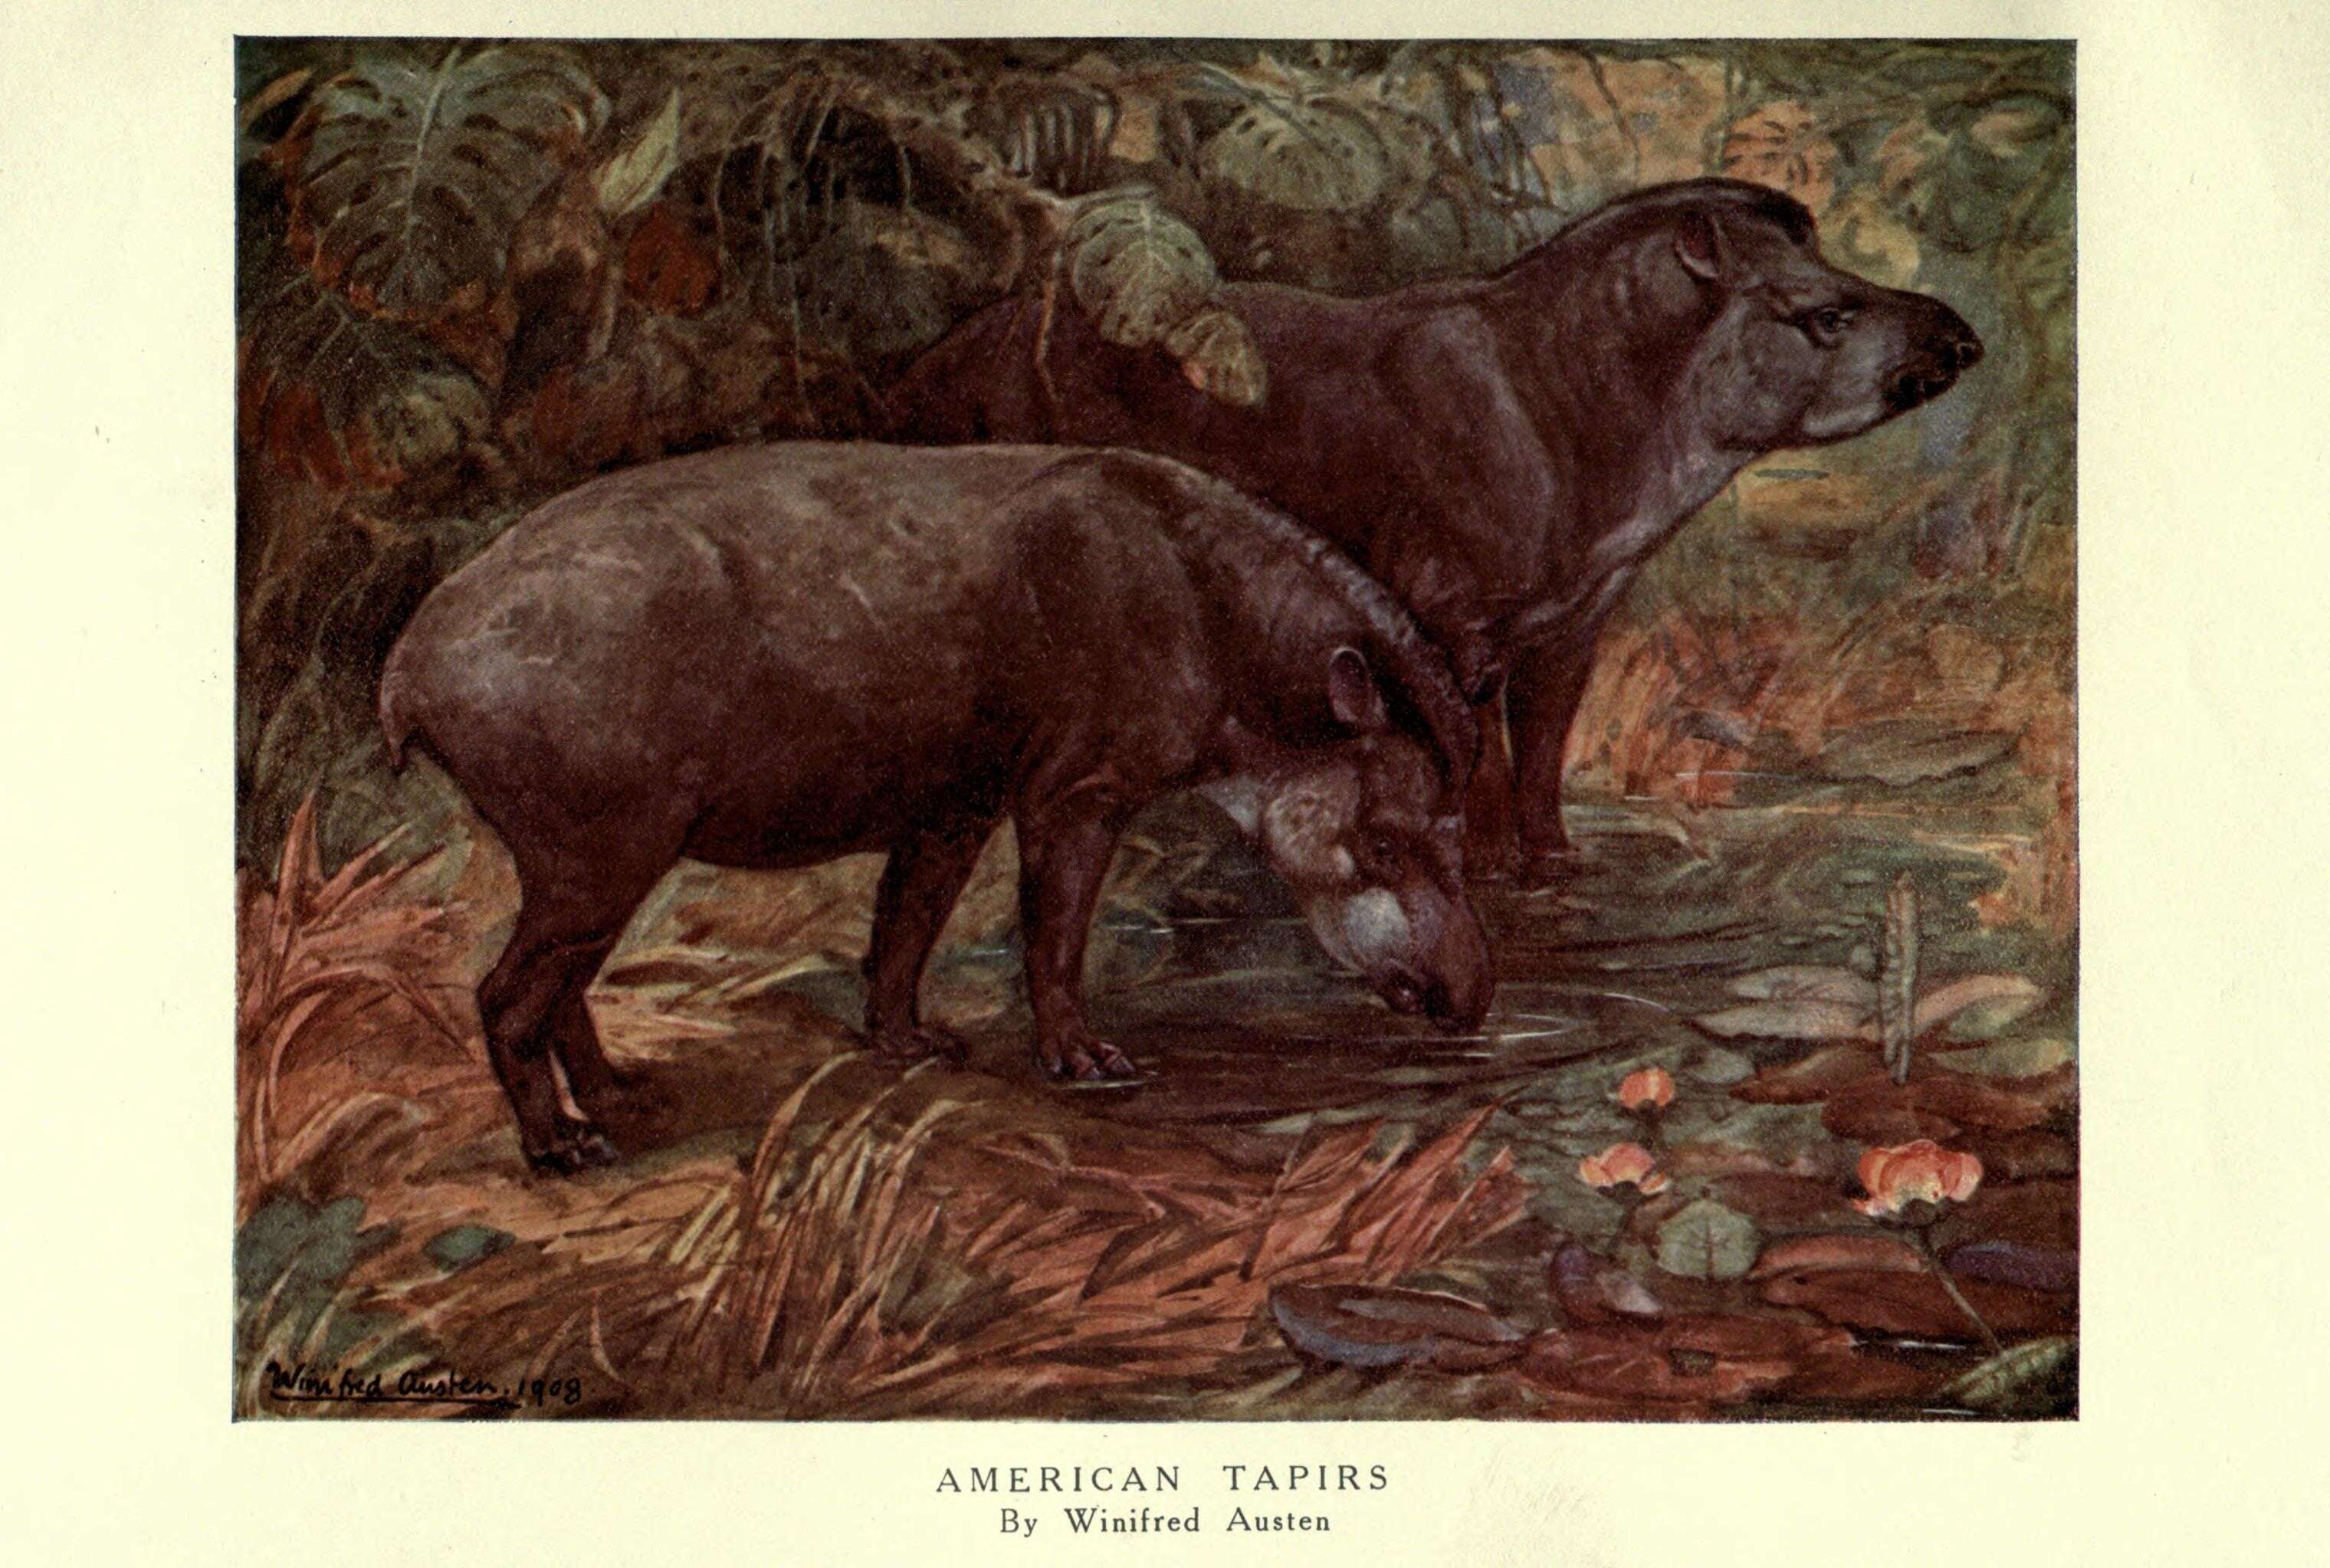 Image of tapirs